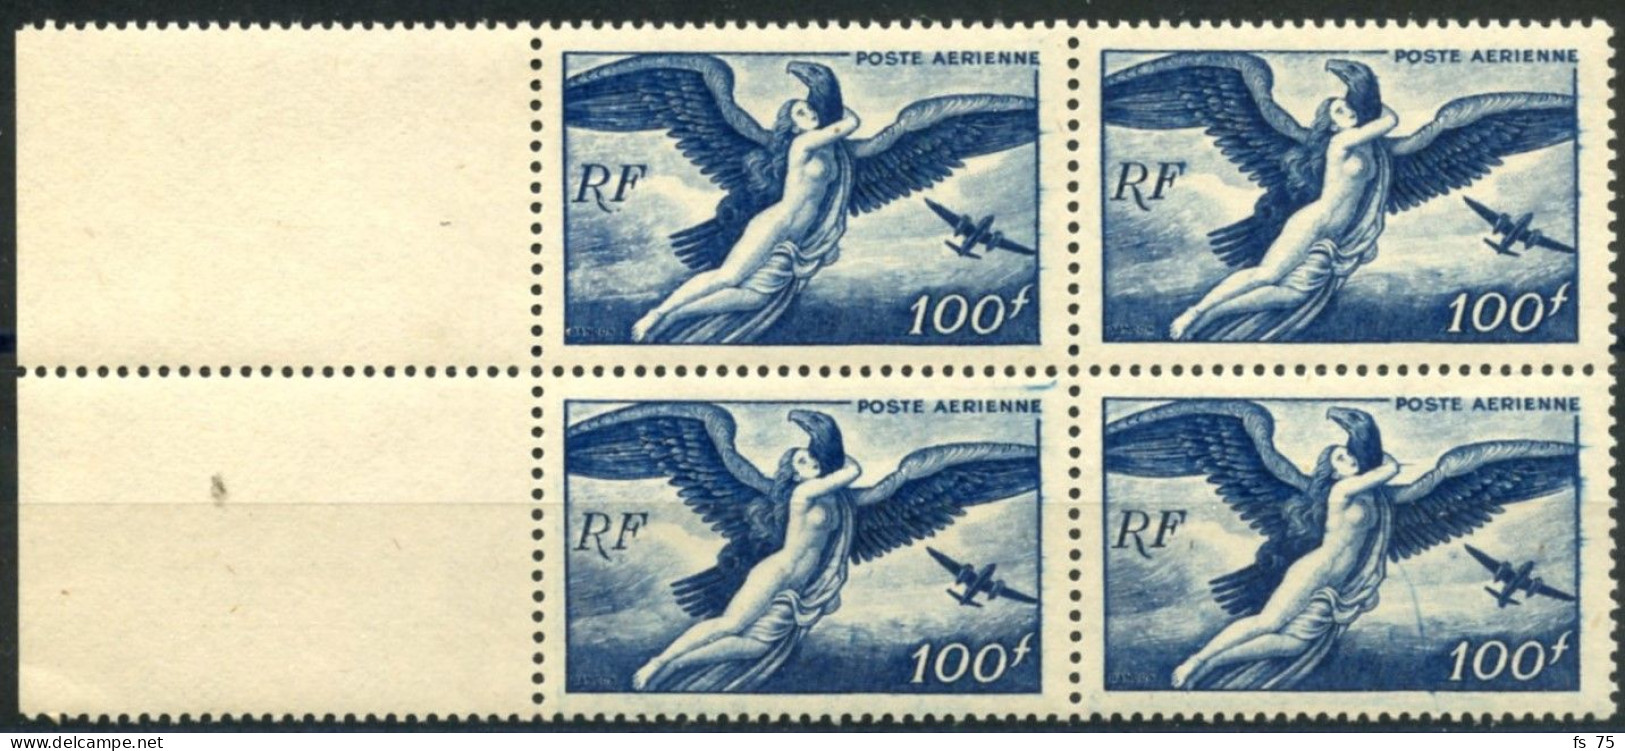 FRANCE - PA 18C 100F EGINE ENLEVEE PAR JUPITER - QUEUE A L'AVION DANS UN BLOC DE 4 - SANS CHARNIERE ** - Unused Stamps